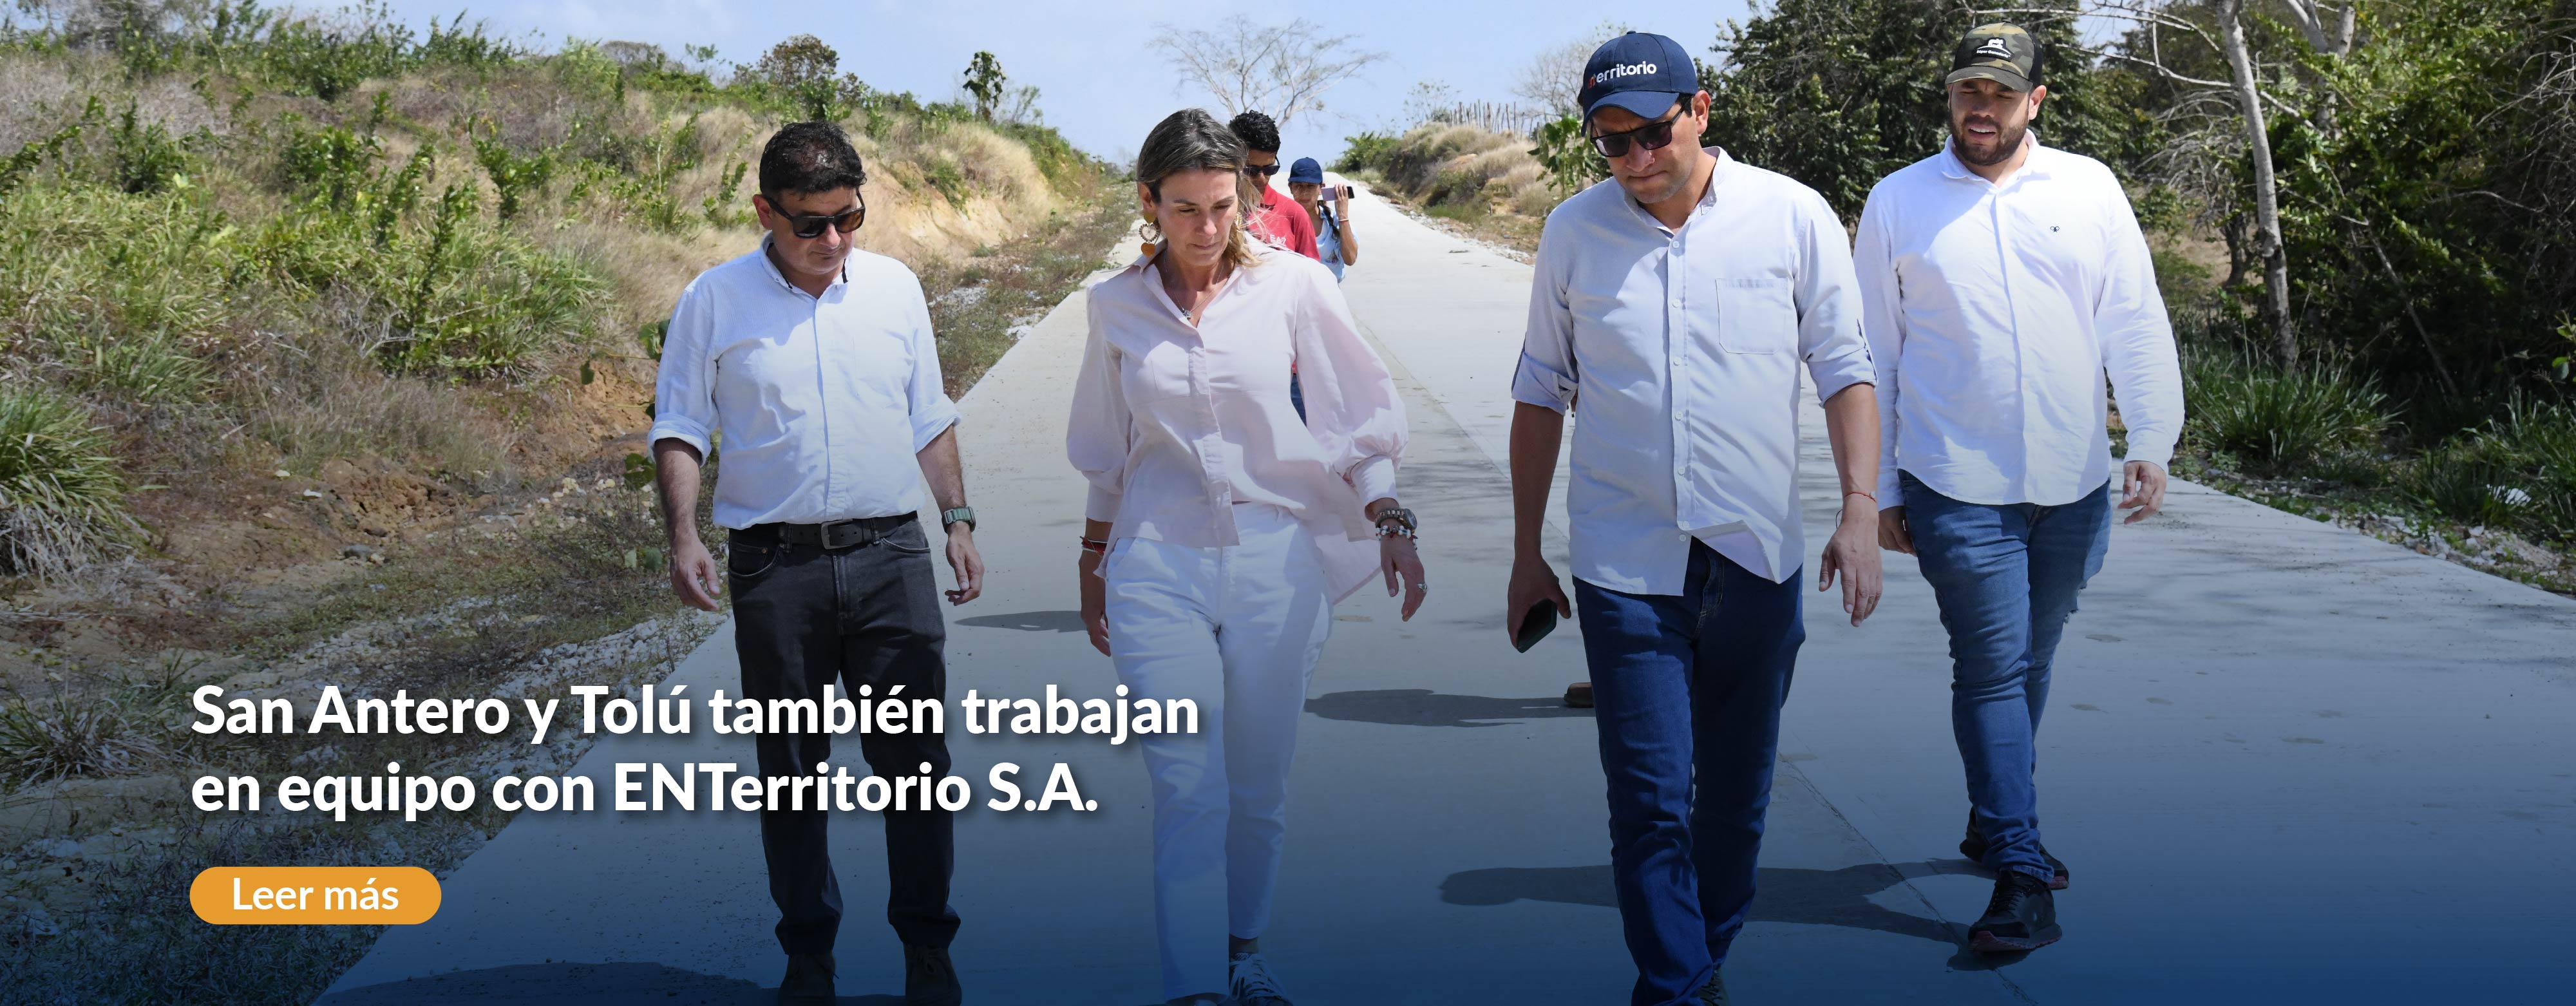 San Antero y Tolú también trabajan en equipo con ENTerritorio S.A.